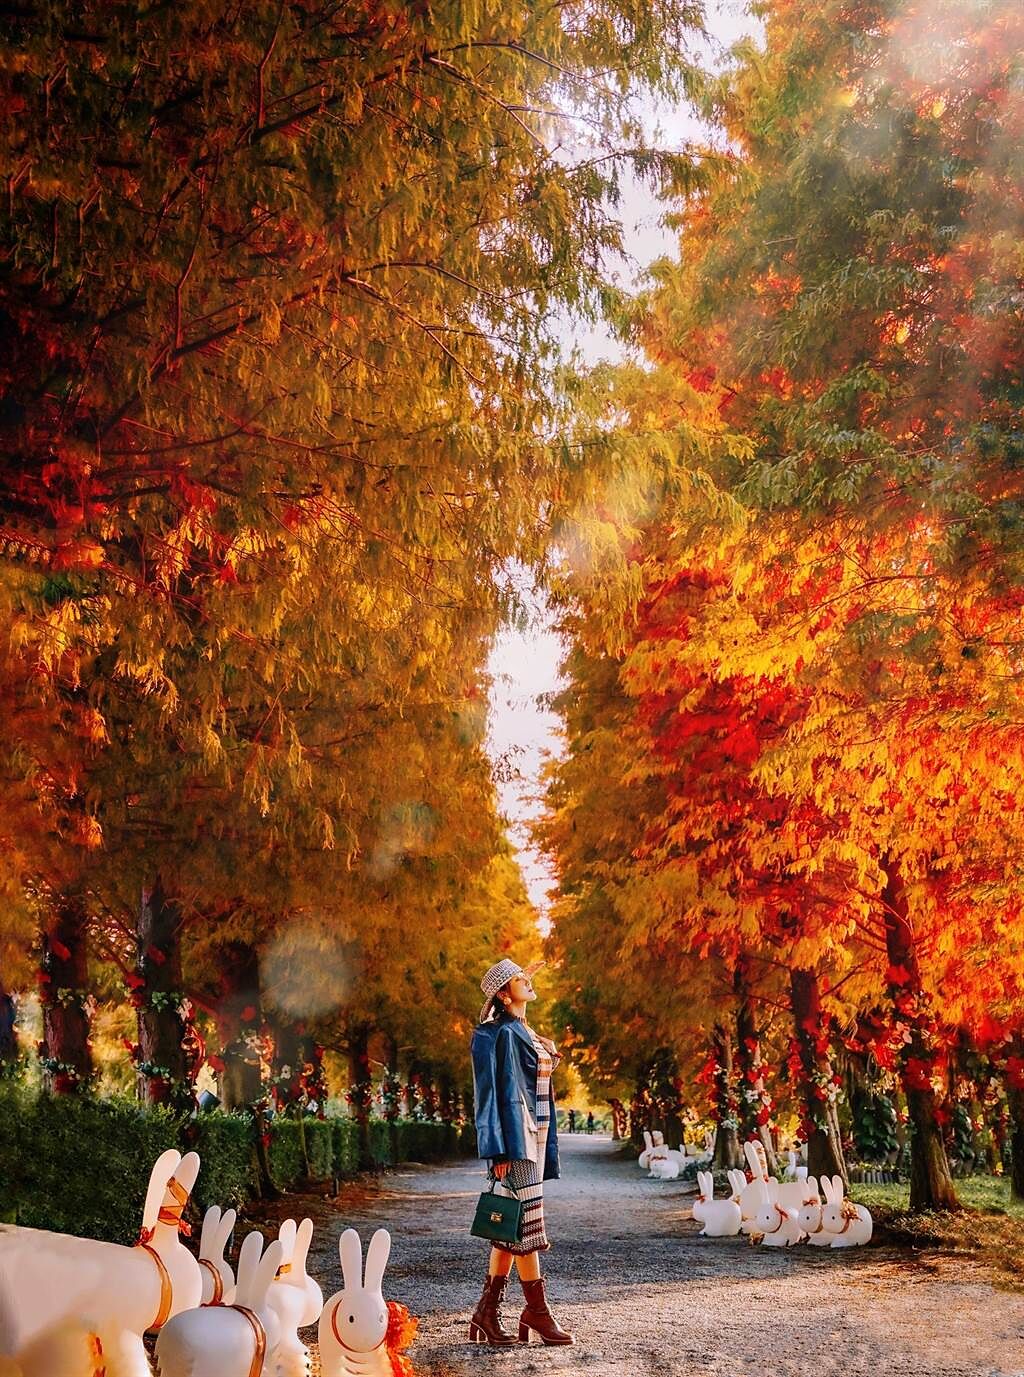 「成美文化園」有彰化最美的落羽松步道，1到2月落羽松轉紅，是最適合觀賞大片橘紅色落羽松美景的時機。(成美文化園提供)